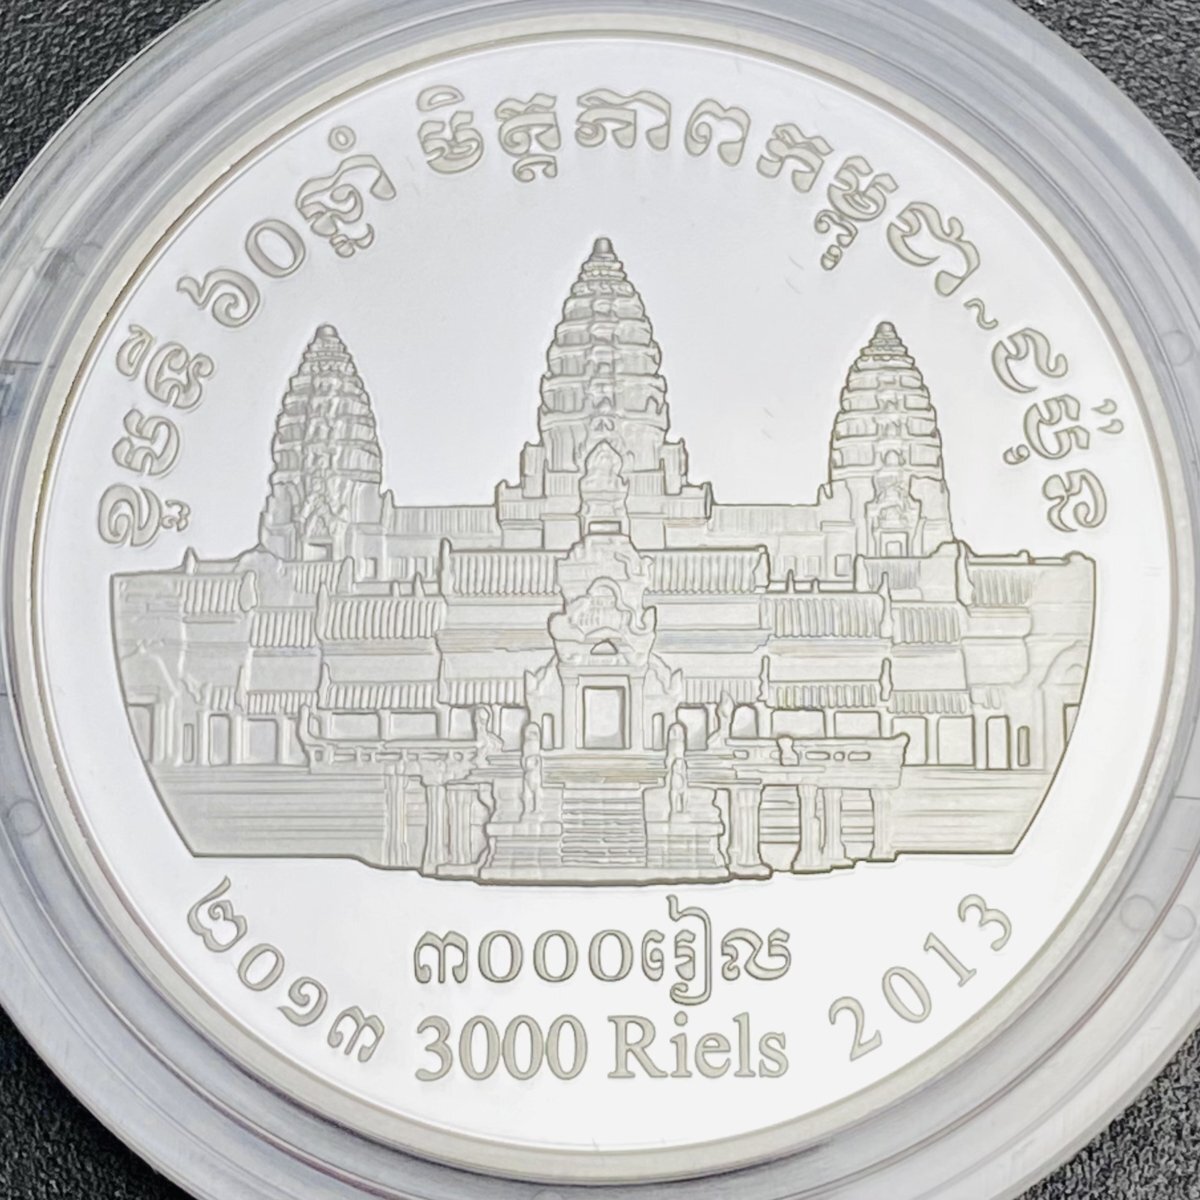 日本 カンボジア友好60周年 カンボジア3000リエル記念プルーフ銀貨幣 20g 2013年 平成25年 記念 銀貨 貨幣 硬貨 コイン G2013n_画像8